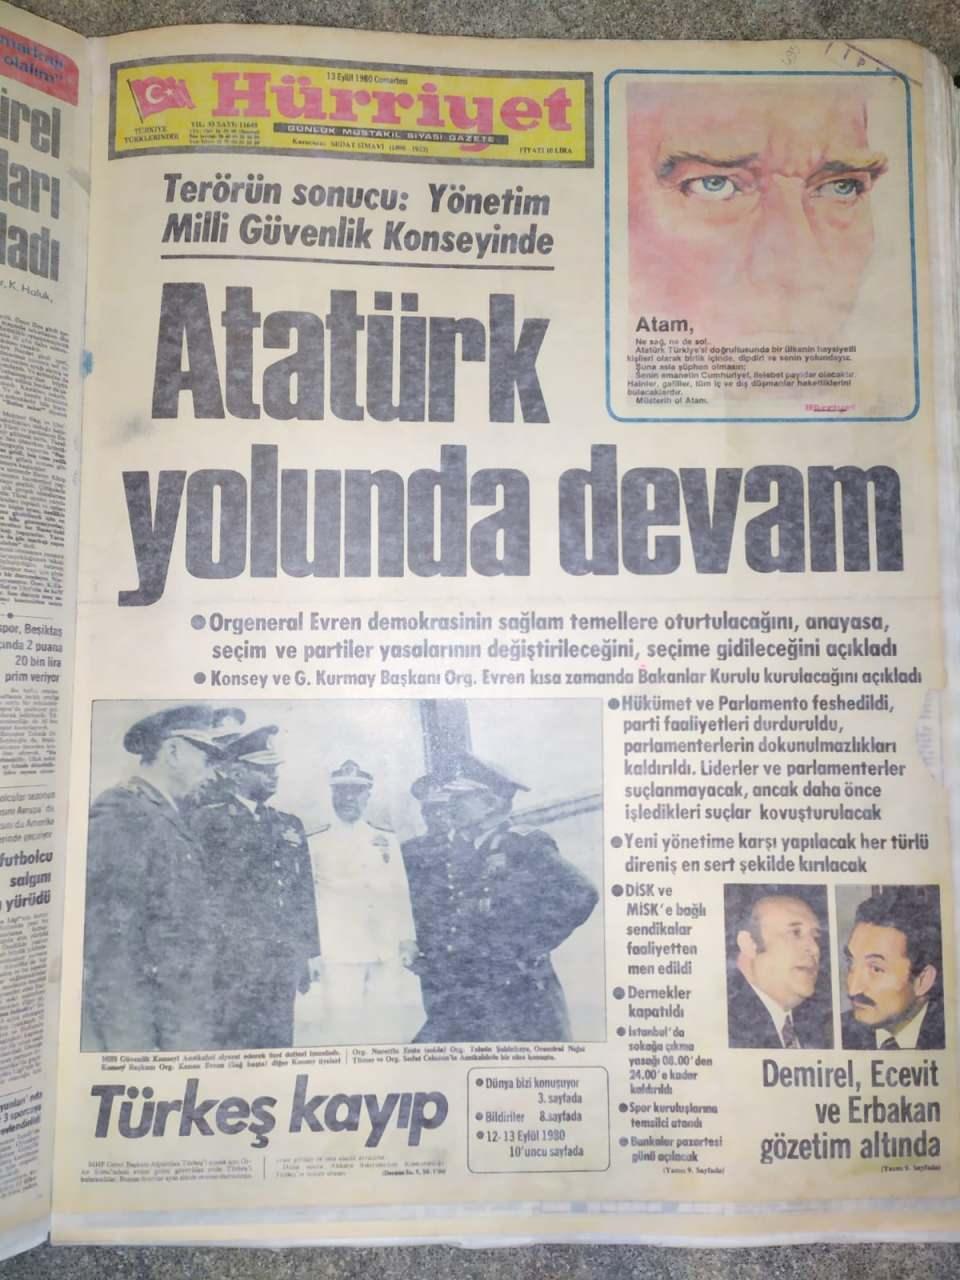 <p>Darbeden sonra ilk idamlar, 8 Ekim 1980'de gerçekleşti. İlk olarak sol görüşlü Necdet Adalı, ardından ülkücü Mustafa Pehlivanoğlu idam edildi. Toplamda idam sayısı 7 bin kişiyi buldu.</p>

<p> </p>
